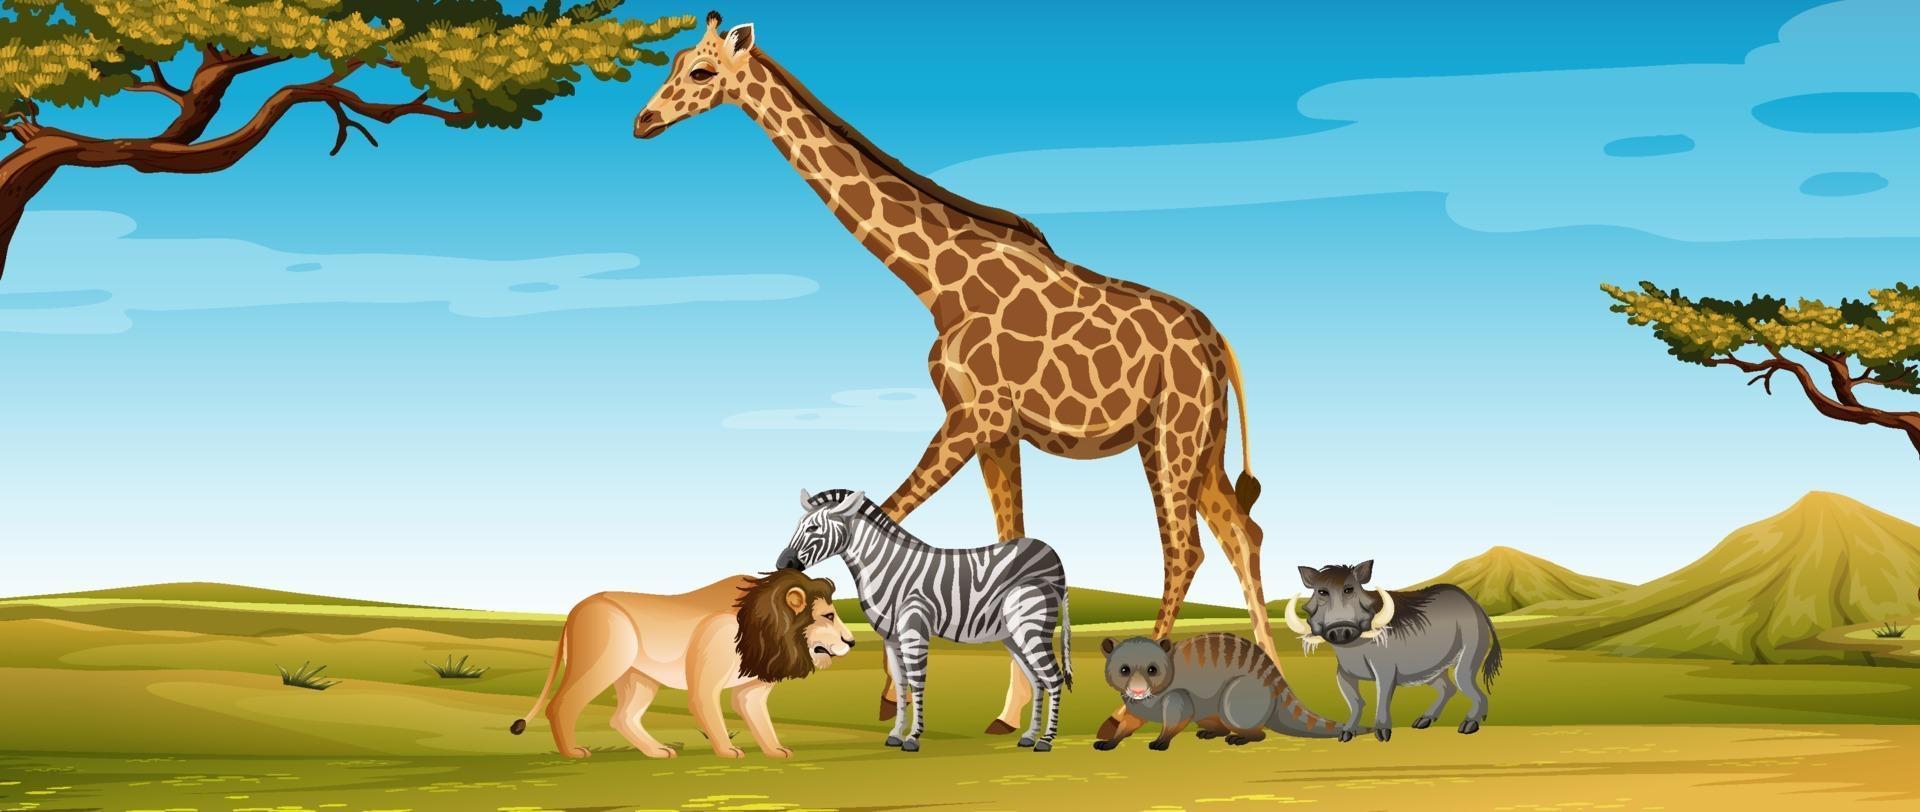 Grupo de animales salvajes africanos en la escena del zoológico vector